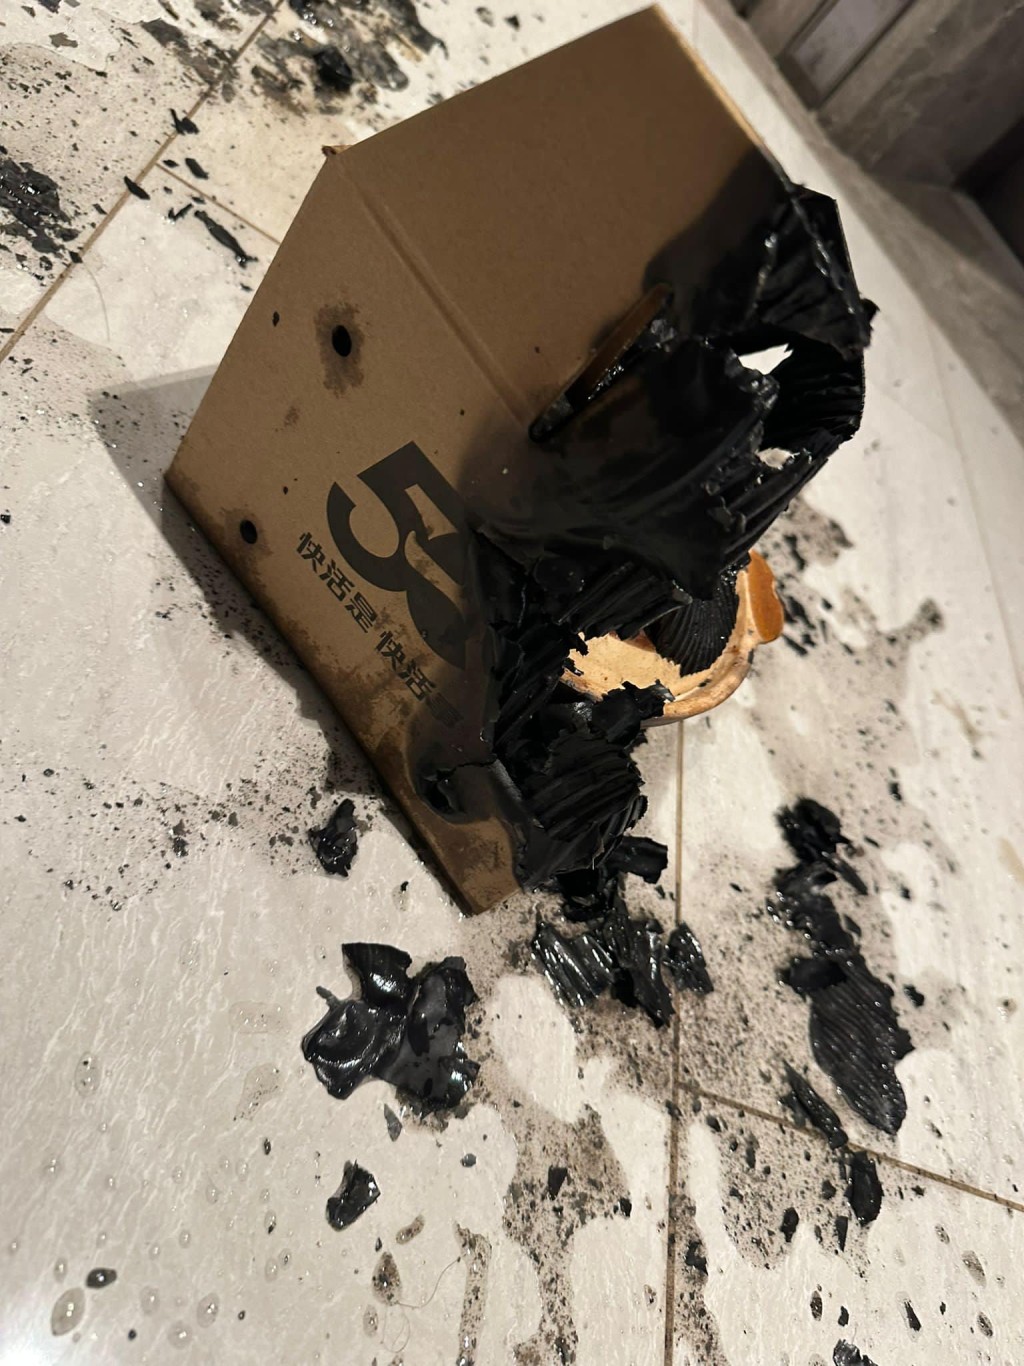 有食客近日從連鎖快餐店購買煲仔飯外賣，怎料該外賣紙盒竟突然着火。